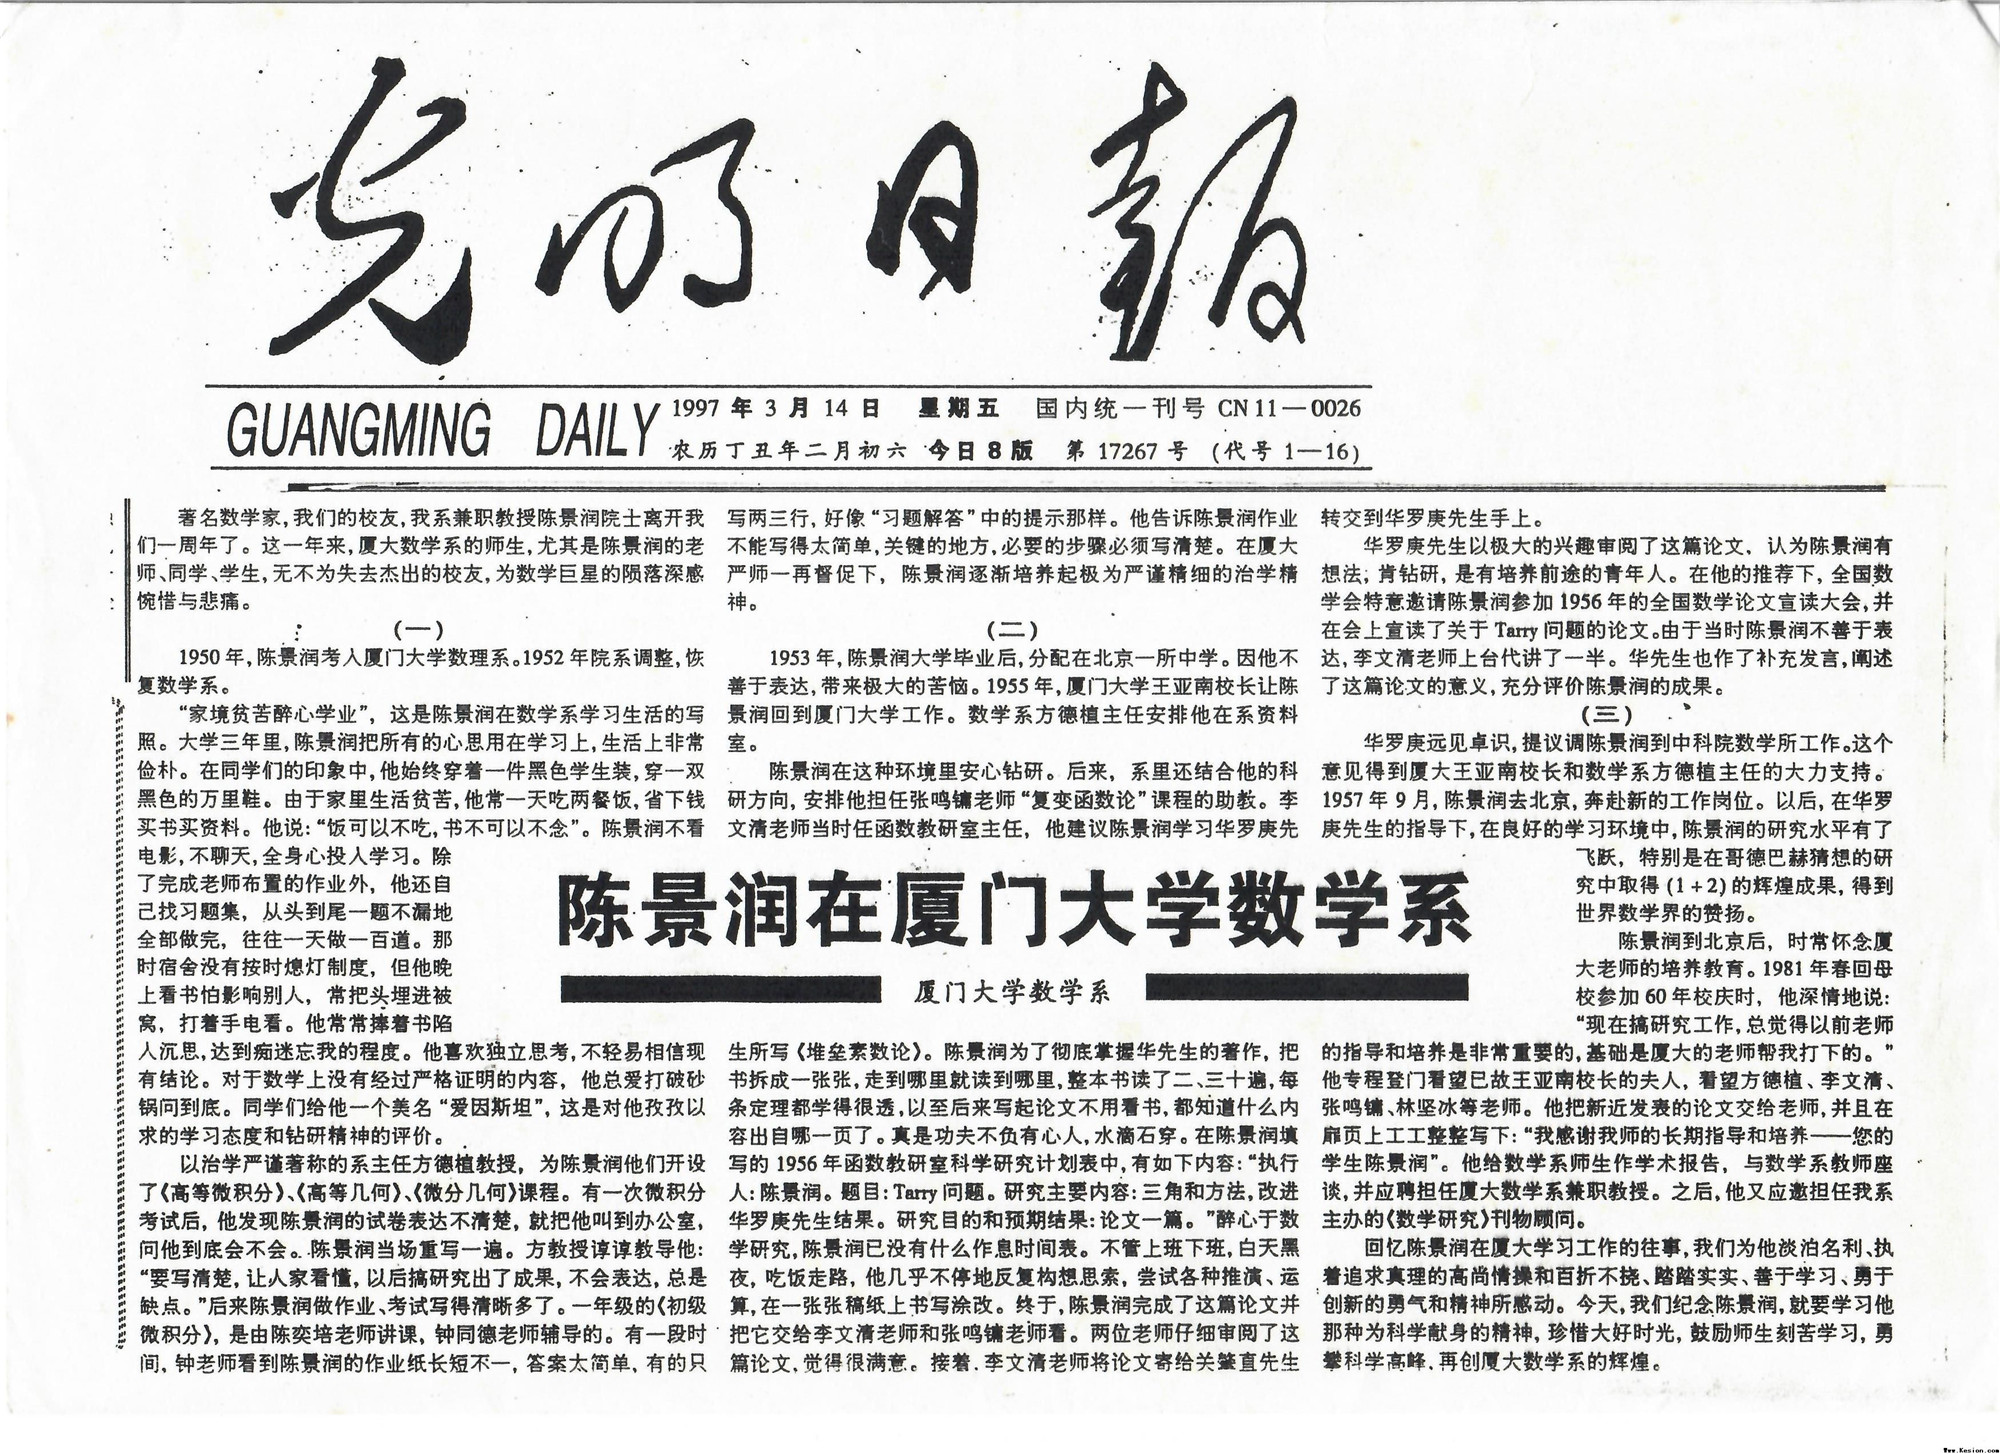 1997年3月14日光明日报刊发《陈景润在蓝莓直播间现场直播数学系》